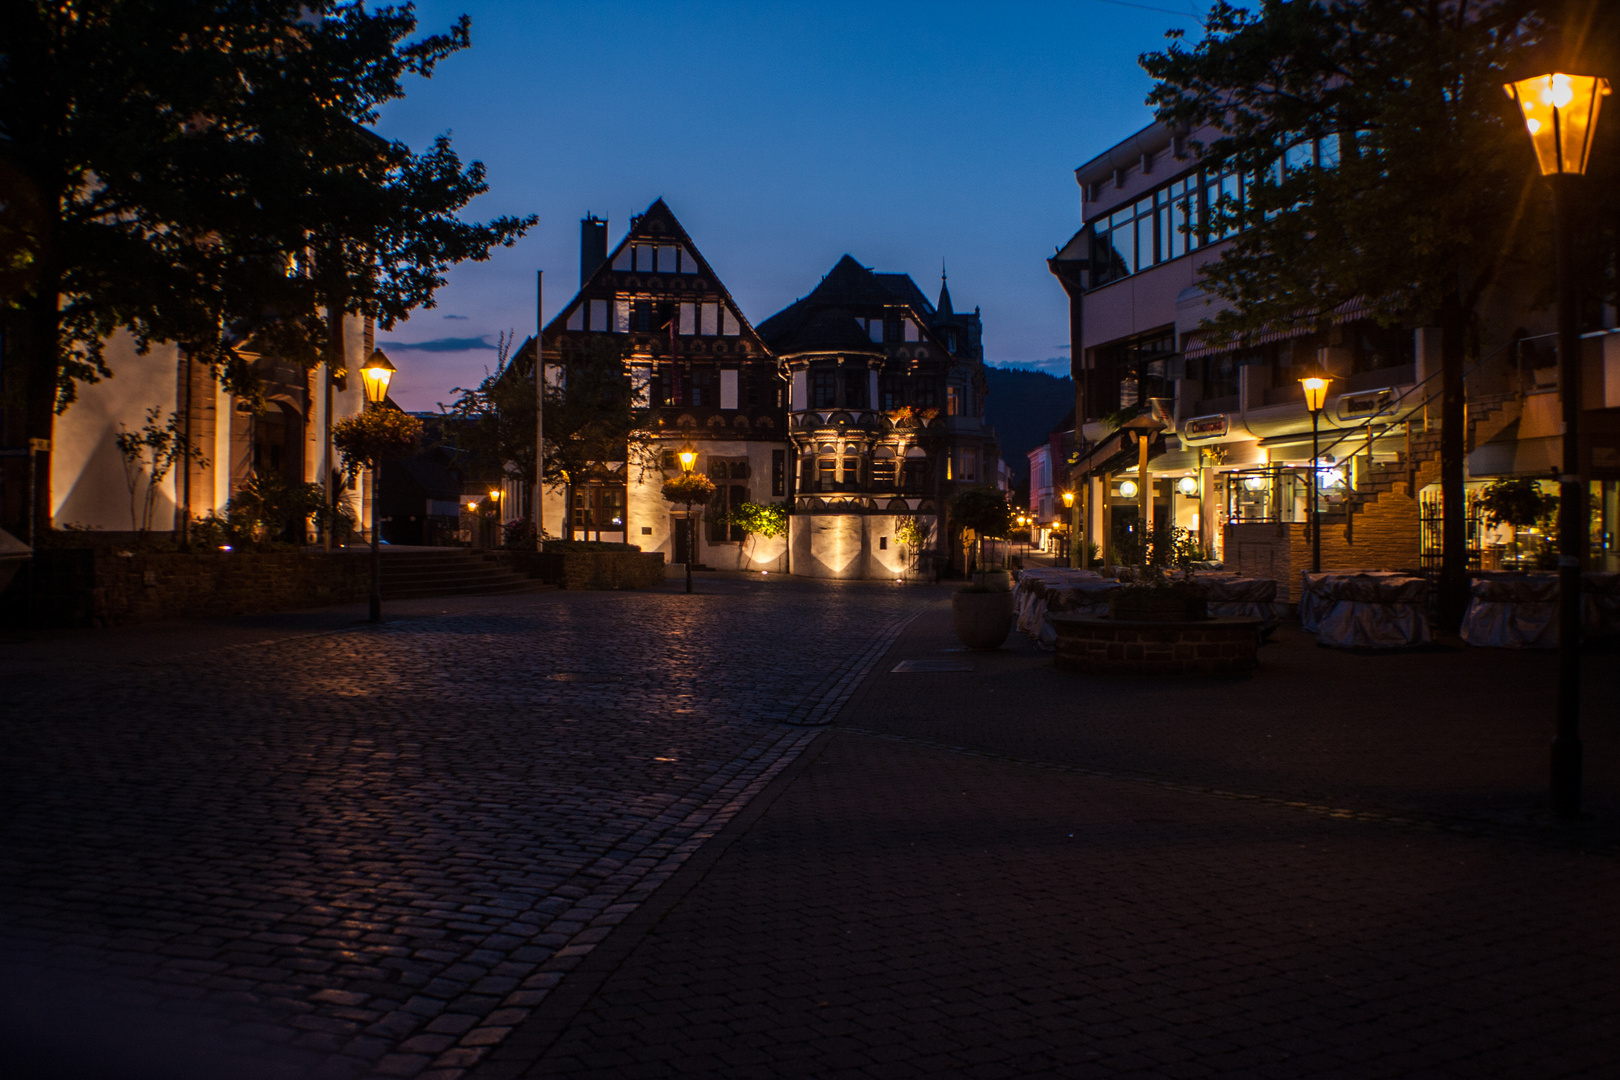 Höxter Altstadt bei Nacht